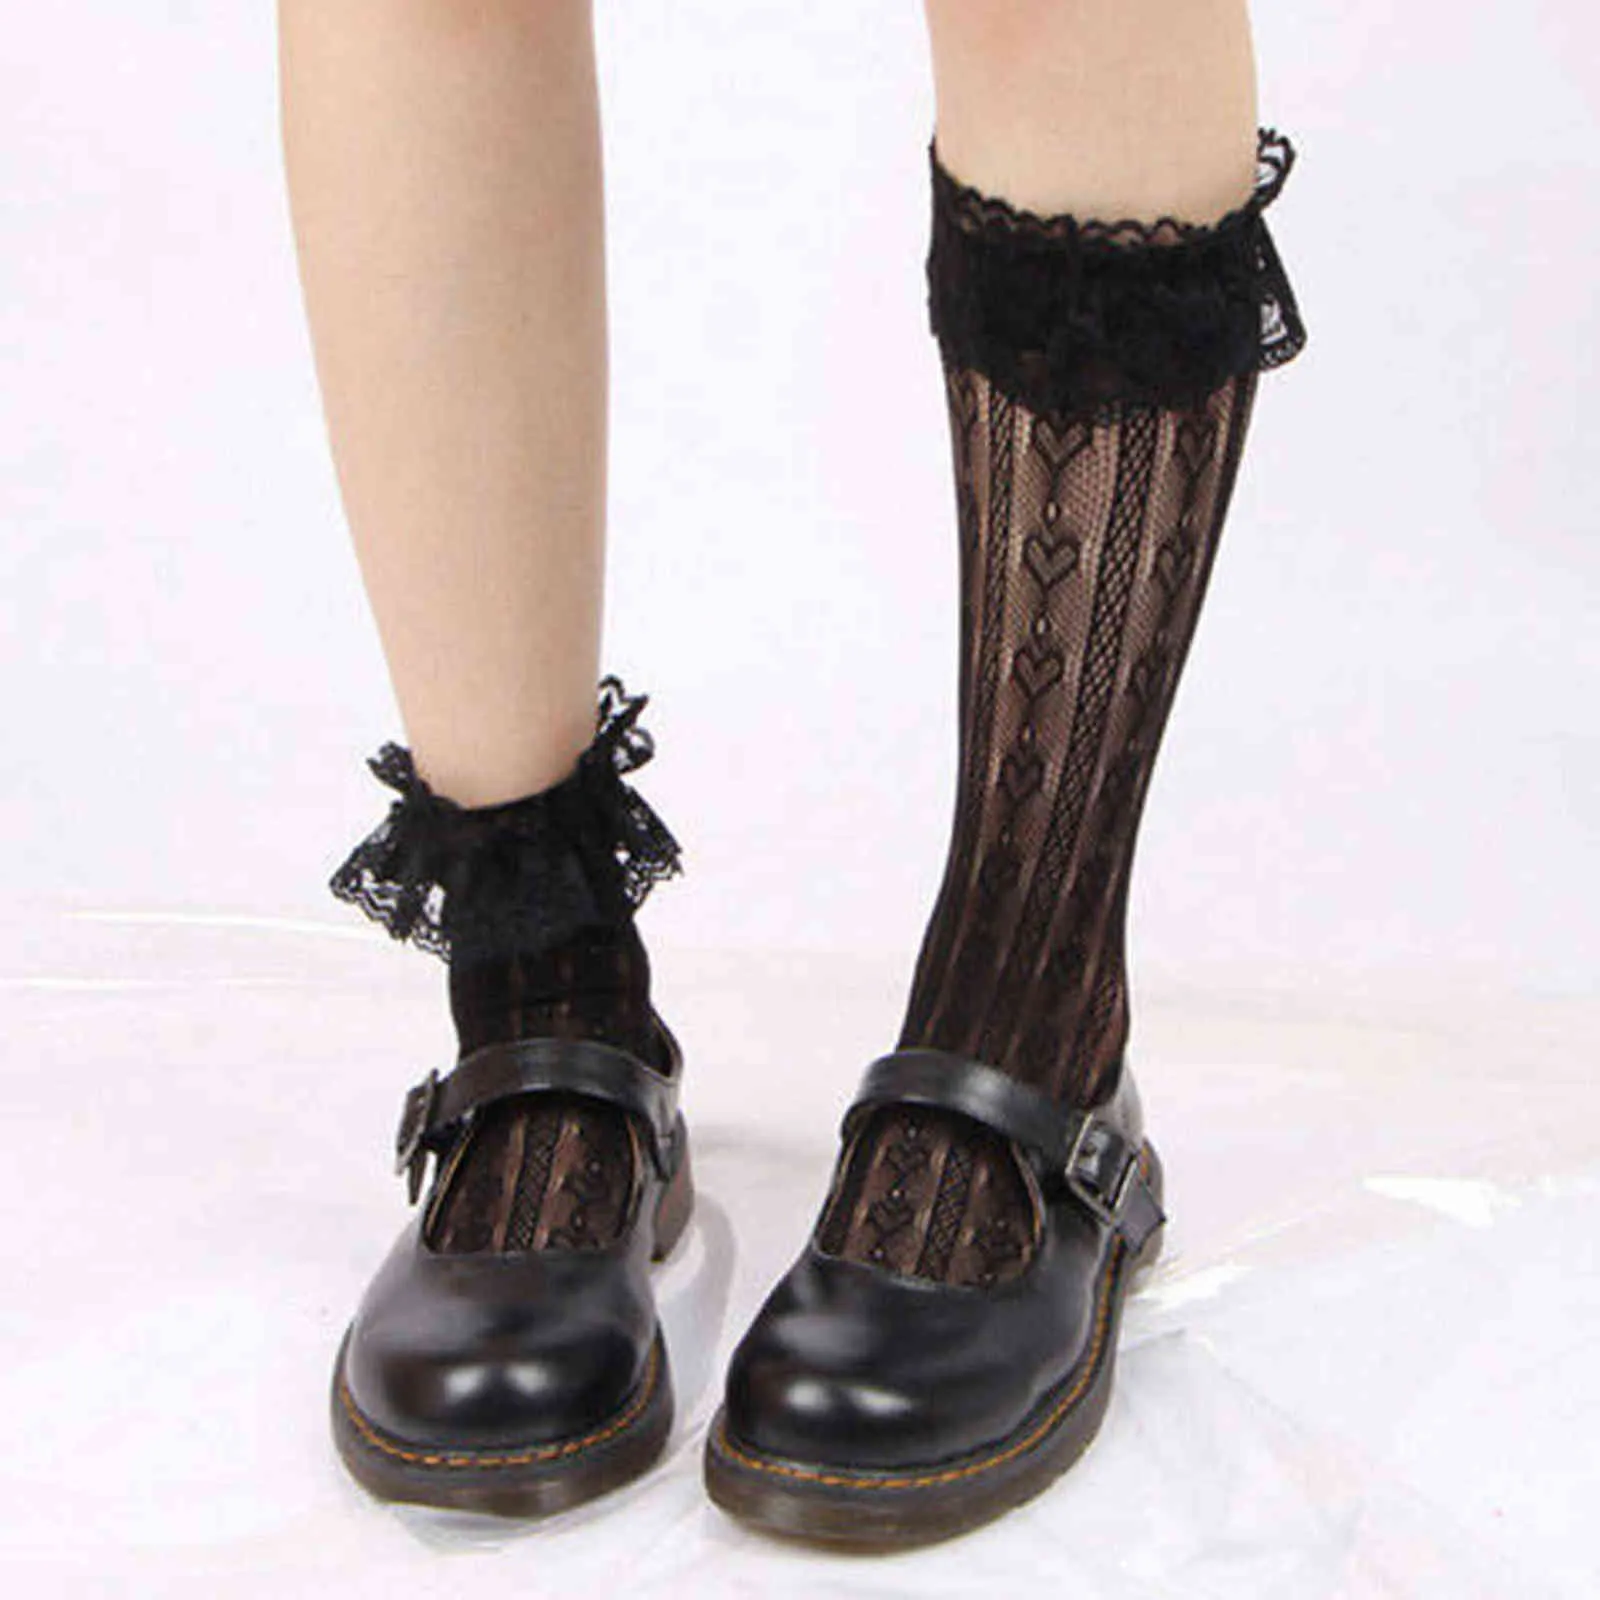 Maid Cute кружева лолита носки черные белые ворса носки сладкие женщины девушка T лук носки девушки женские косплеи костюмы аксессуары Y1119